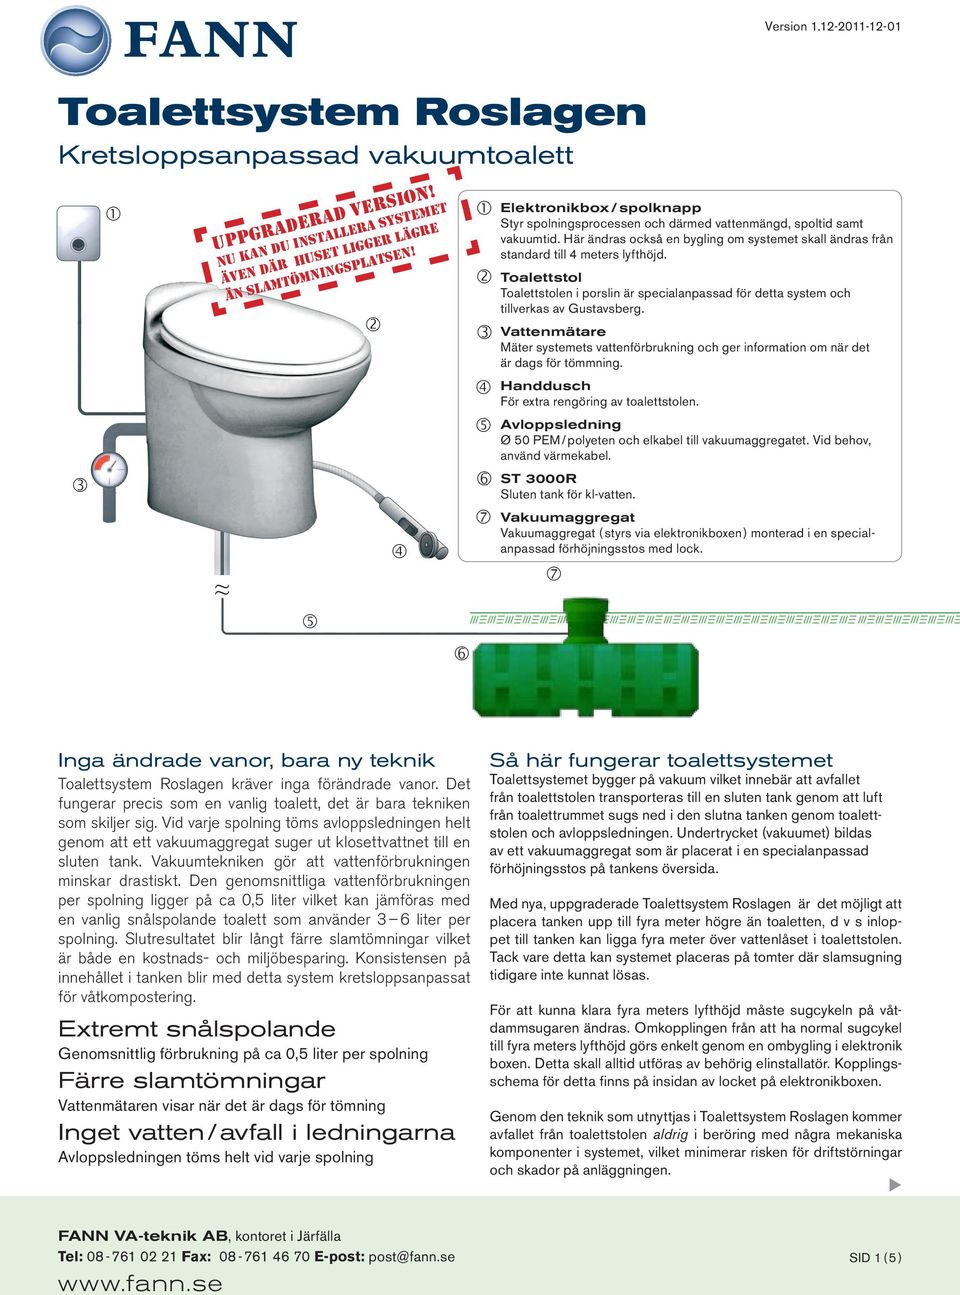 Toalettstol Toalettstolen i porslin är specialanpassad för detta system och tillverkas av Gustavsberg.